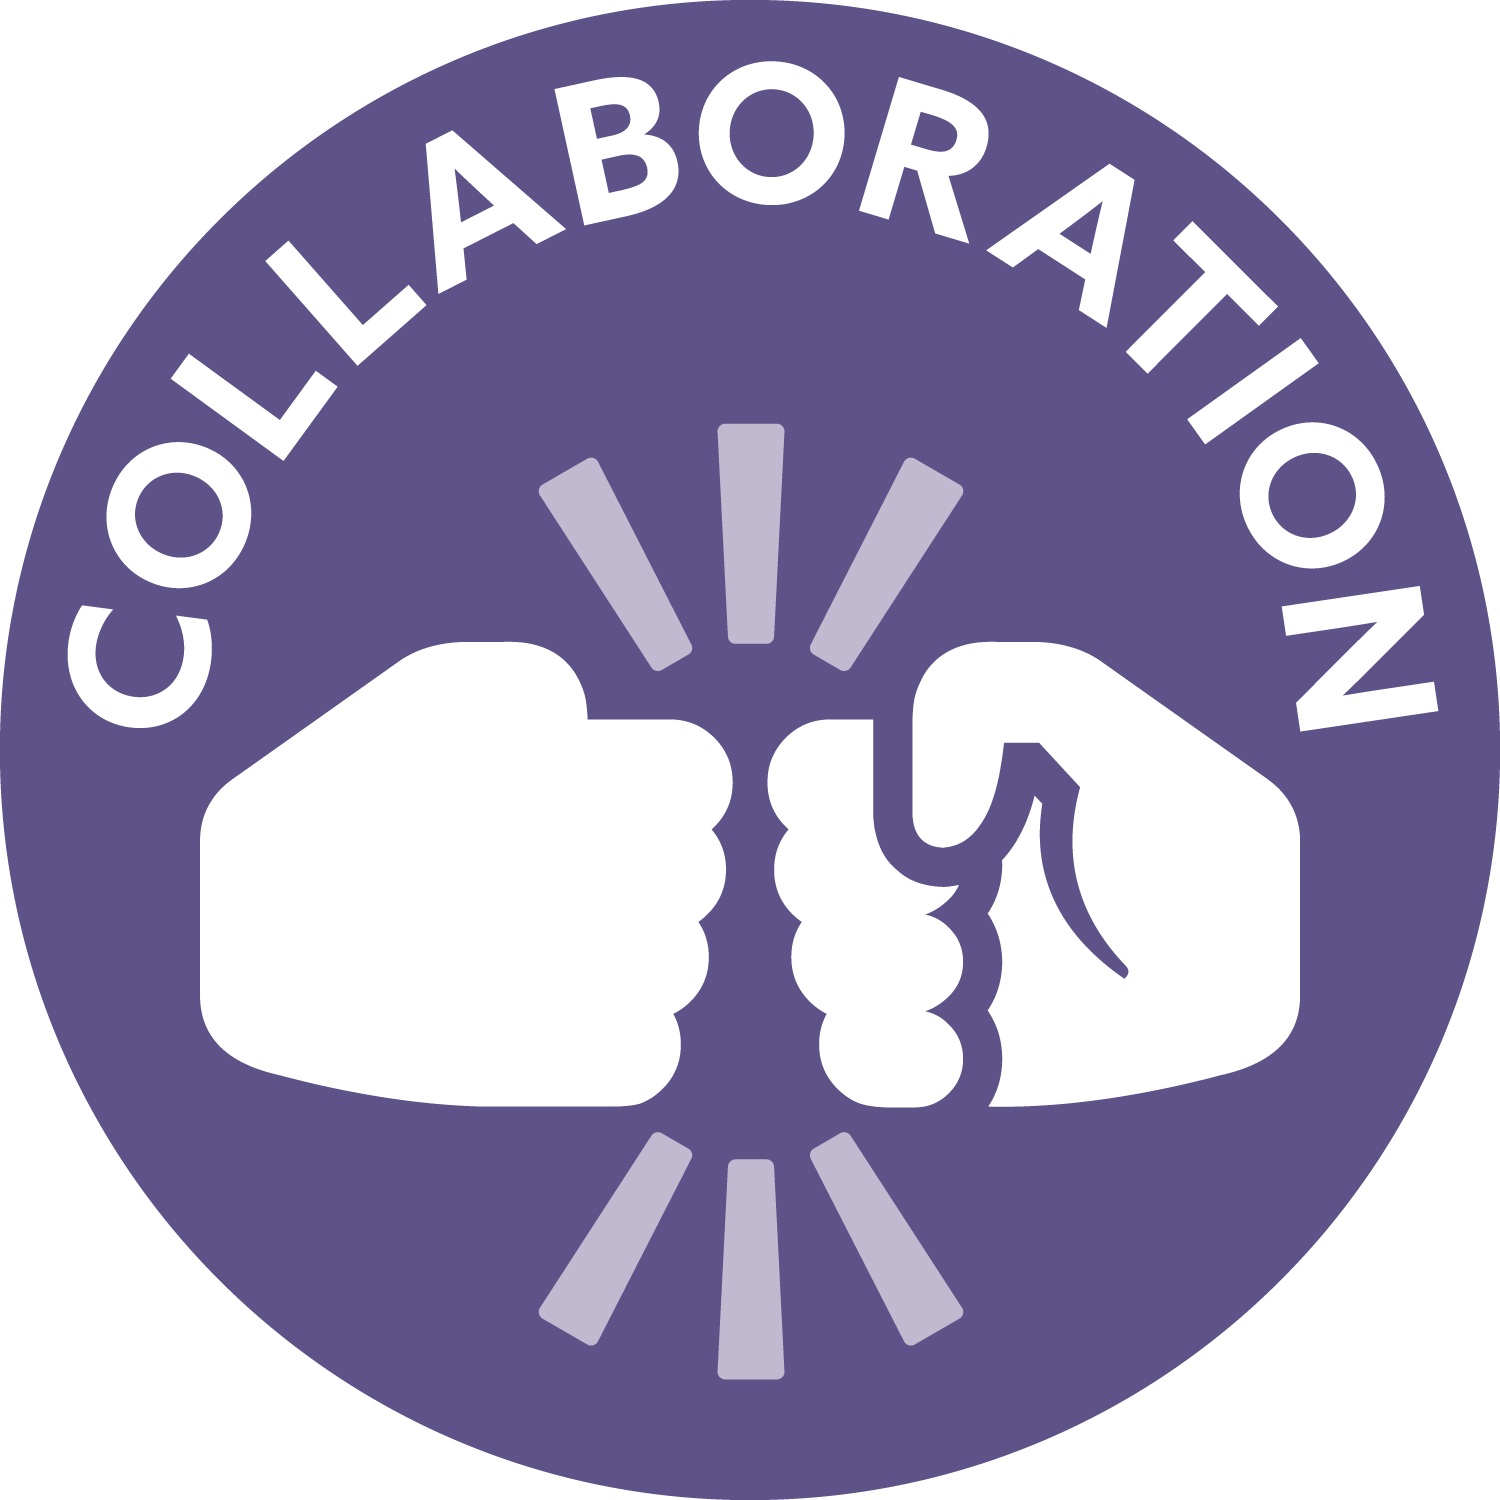 collaboration; icon of a fist bump